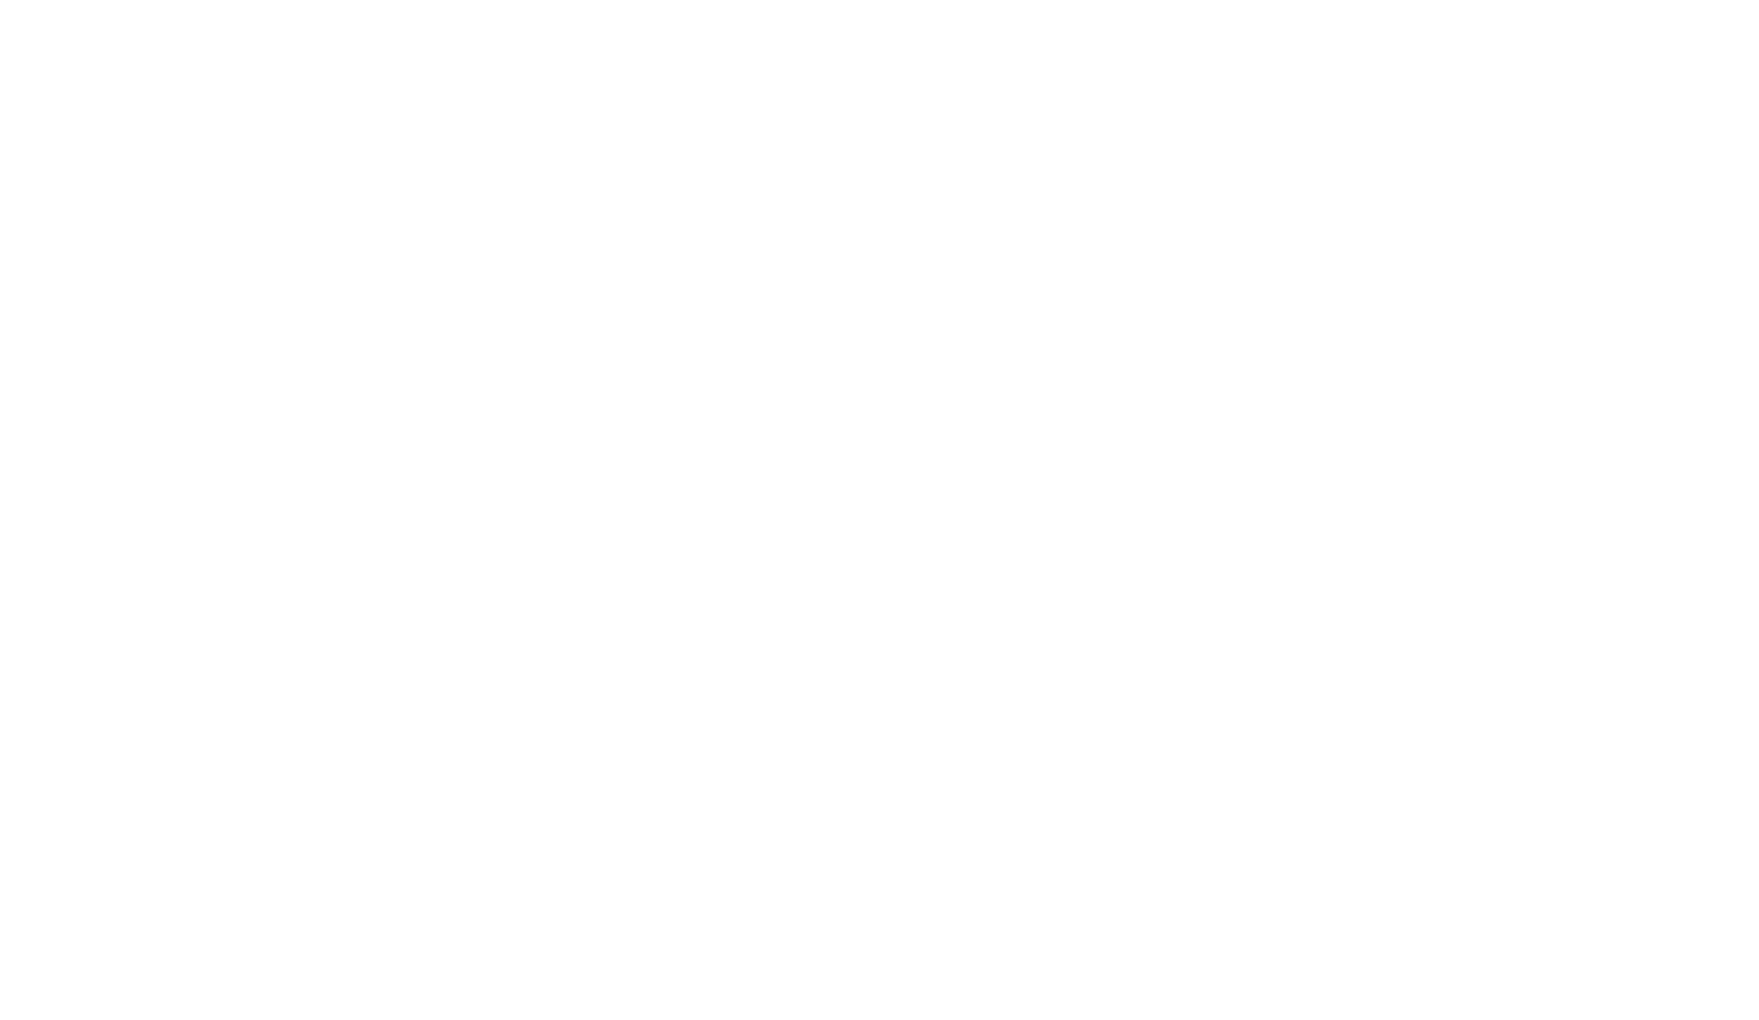 Gateway Brazil